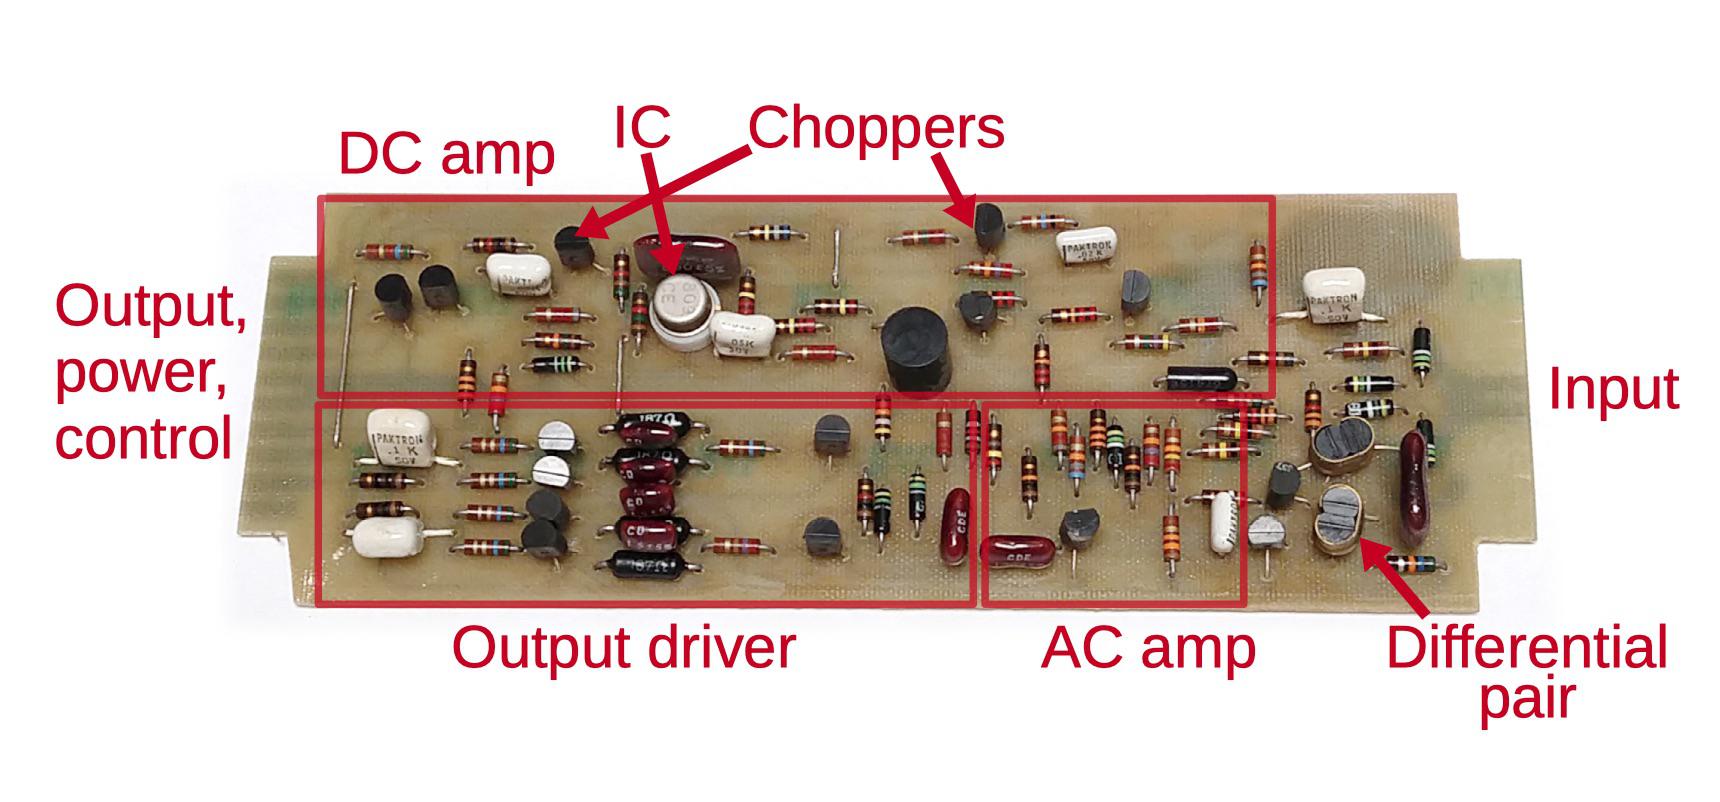 Реверс-инжиниринг малошумящих операционных усилителей из аналогового компьютера 1969 года - 8